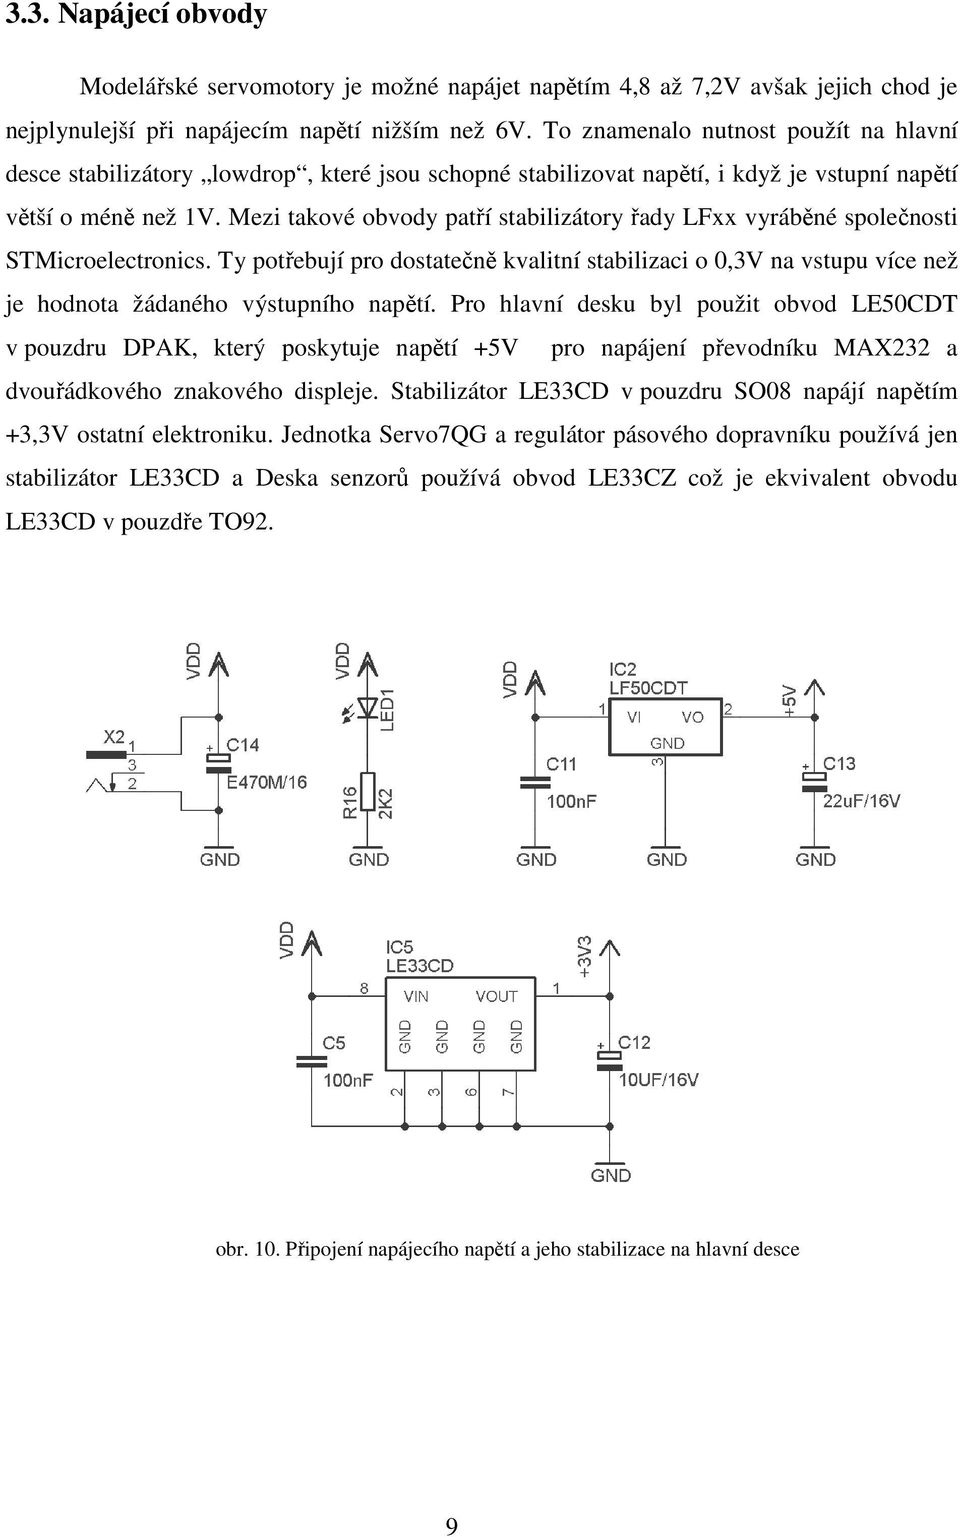 Mezi takové obvody patří stabilizátory řady LFxx vyráběné společnosti STMicroelectronics.